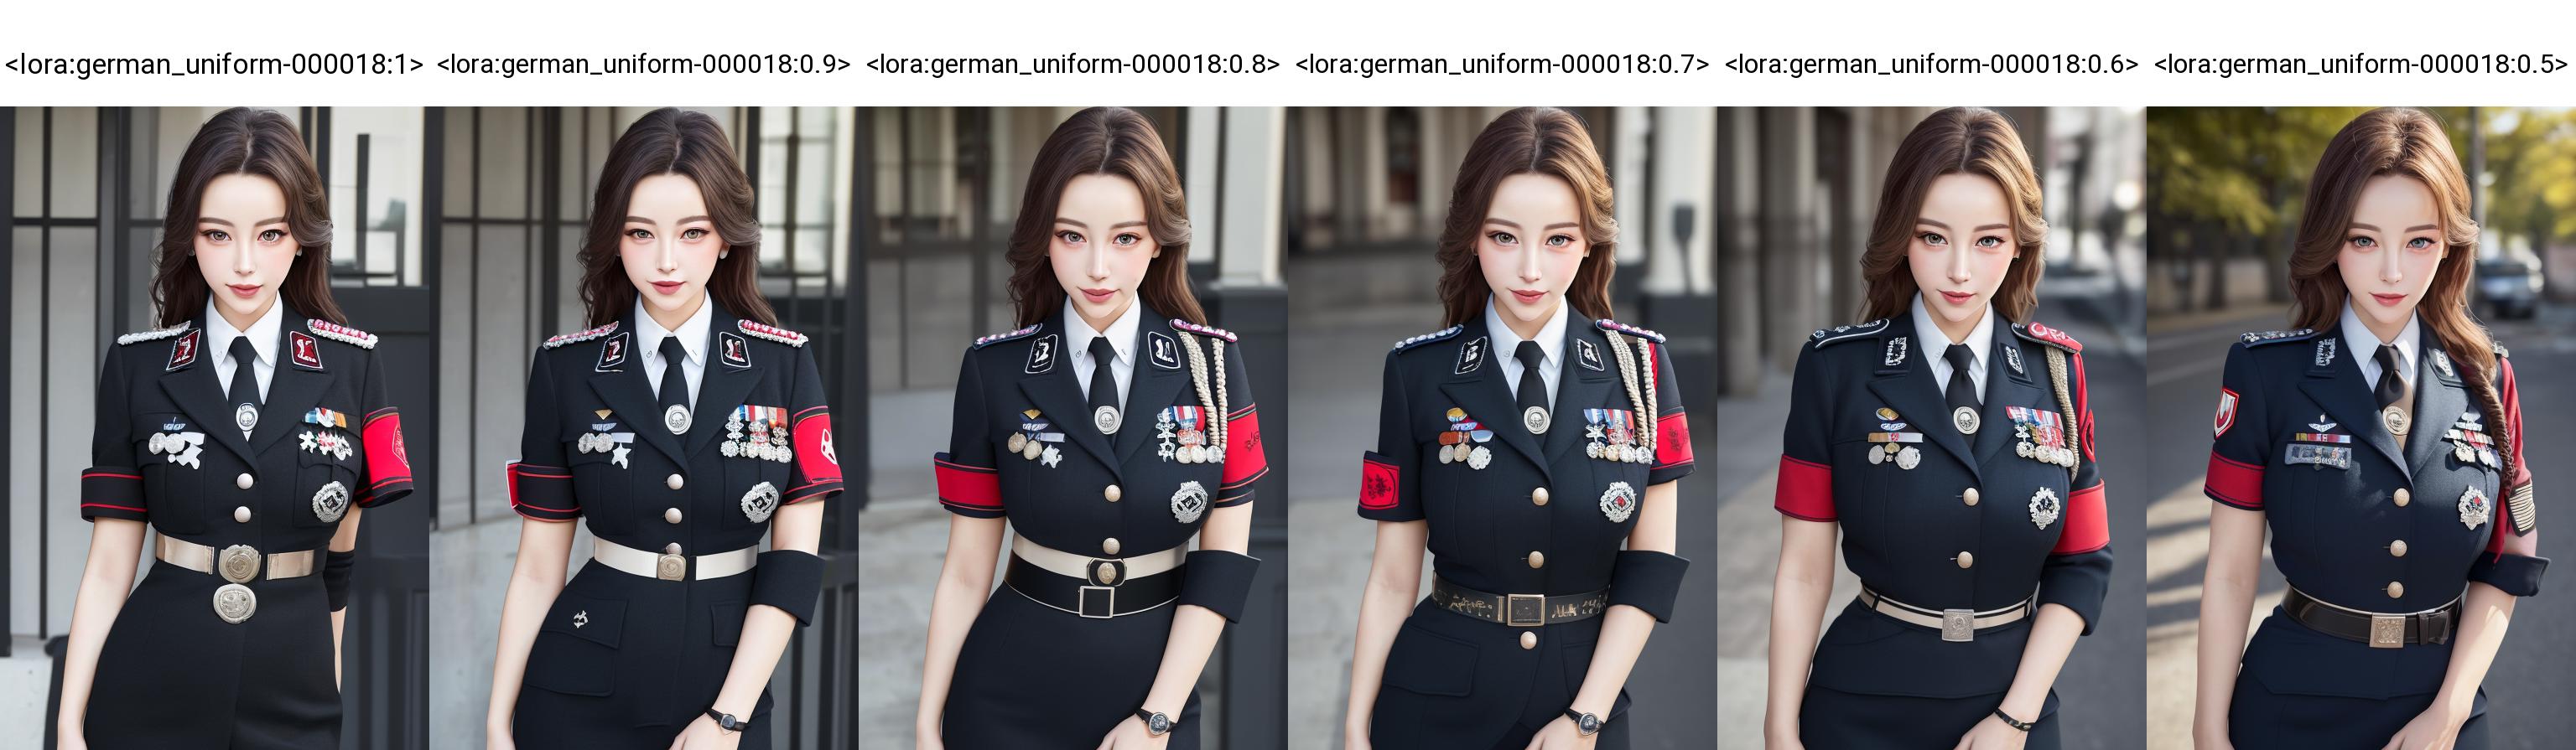 military uniform image by kkwkk